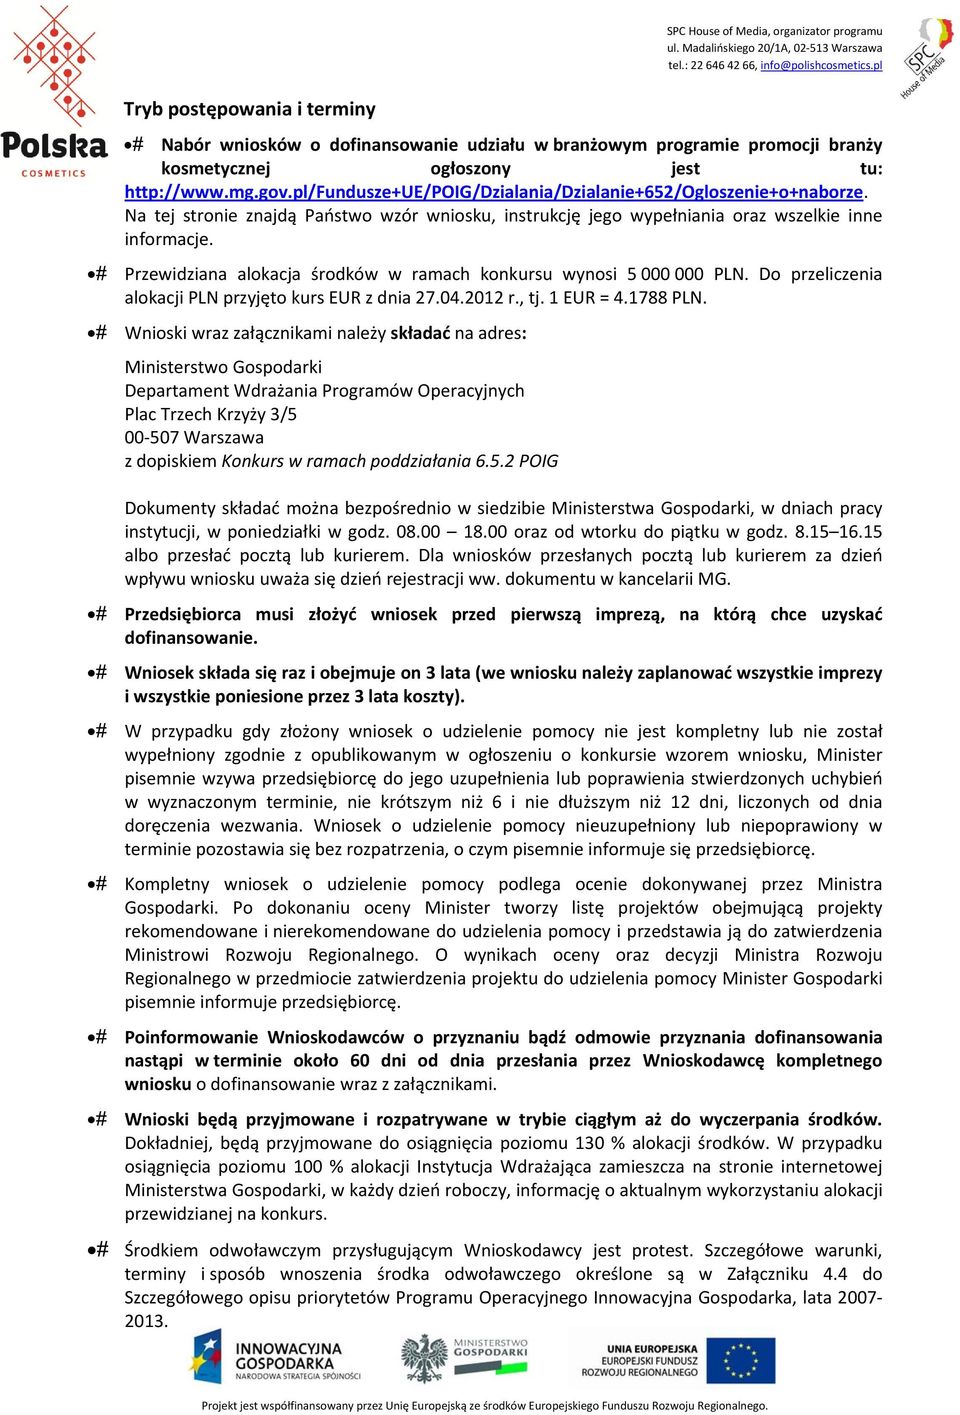 Przewidziana alokacja środków w ramach konkursu wynosi 5 000 000 PLN. Do przeliczenia alokacji PLN przyjęto kurs EUR z dnia 27.04.2012 r., tj. 1 EUR = 4.1788 PLN.